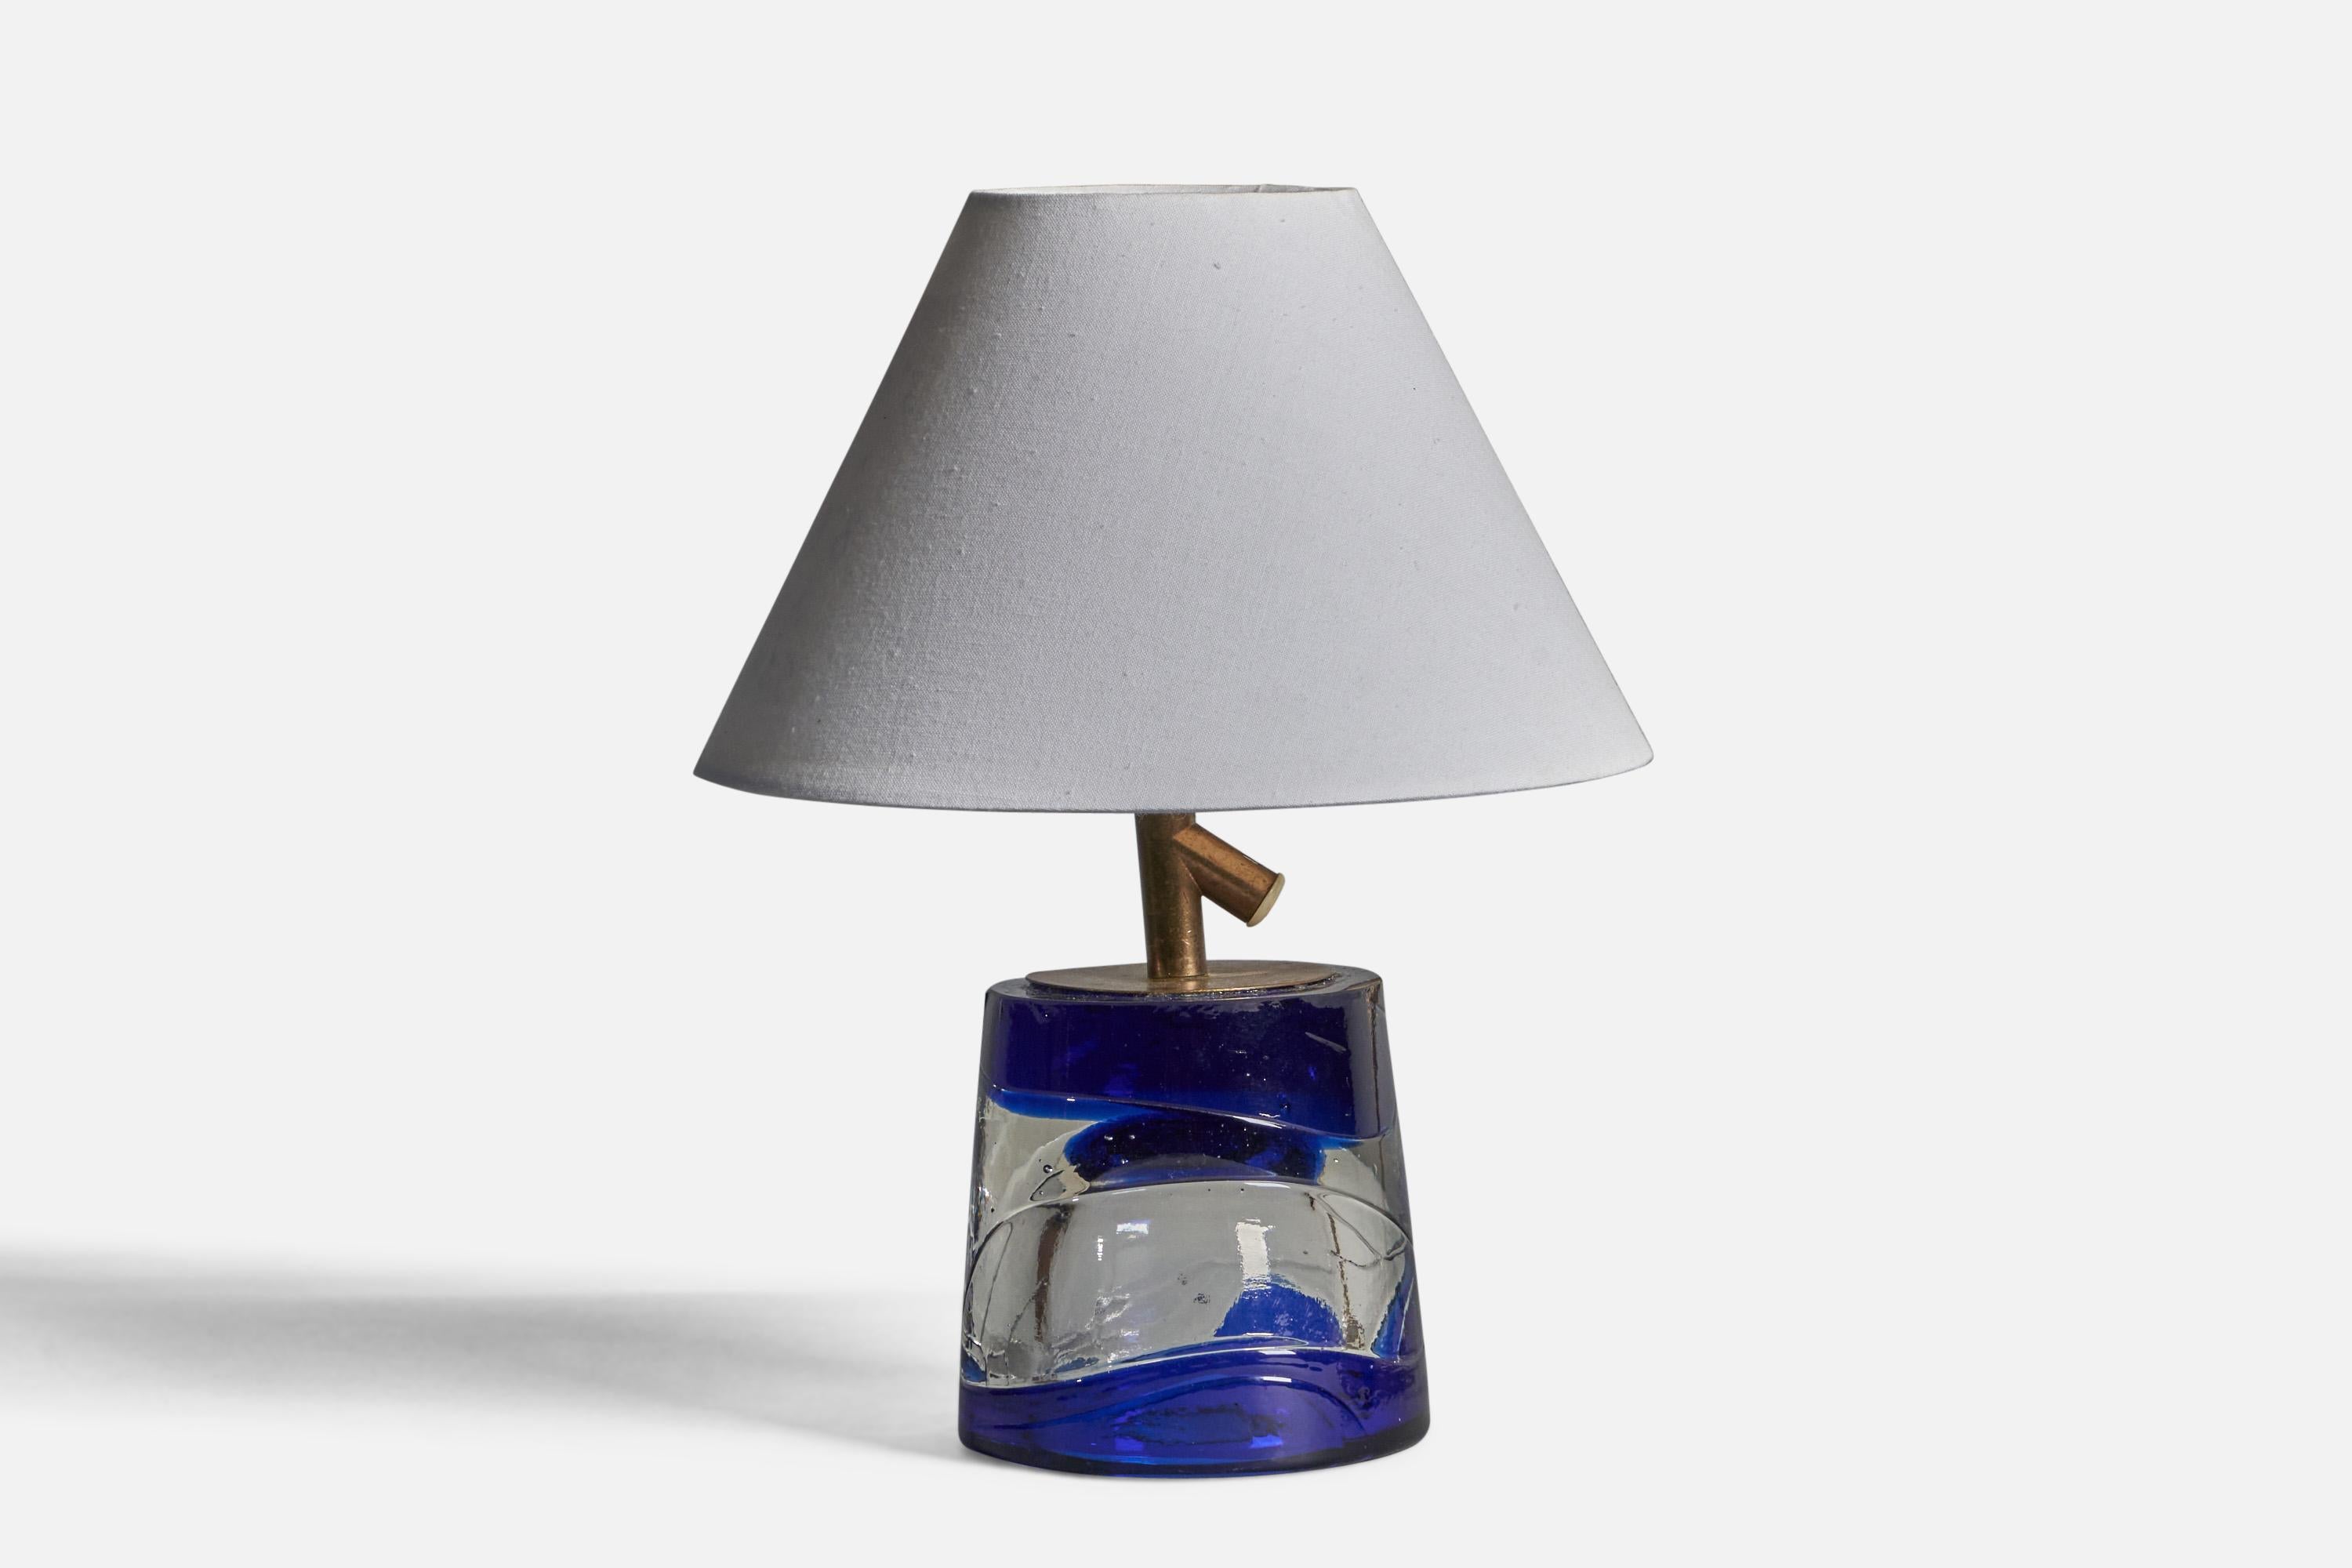 Lampe de table en verre bleu et translucide et en laiton, conçue et produite par Reijmyre, Suède, années 1960.

Dimensions de la lampe (pouces) : 7.5